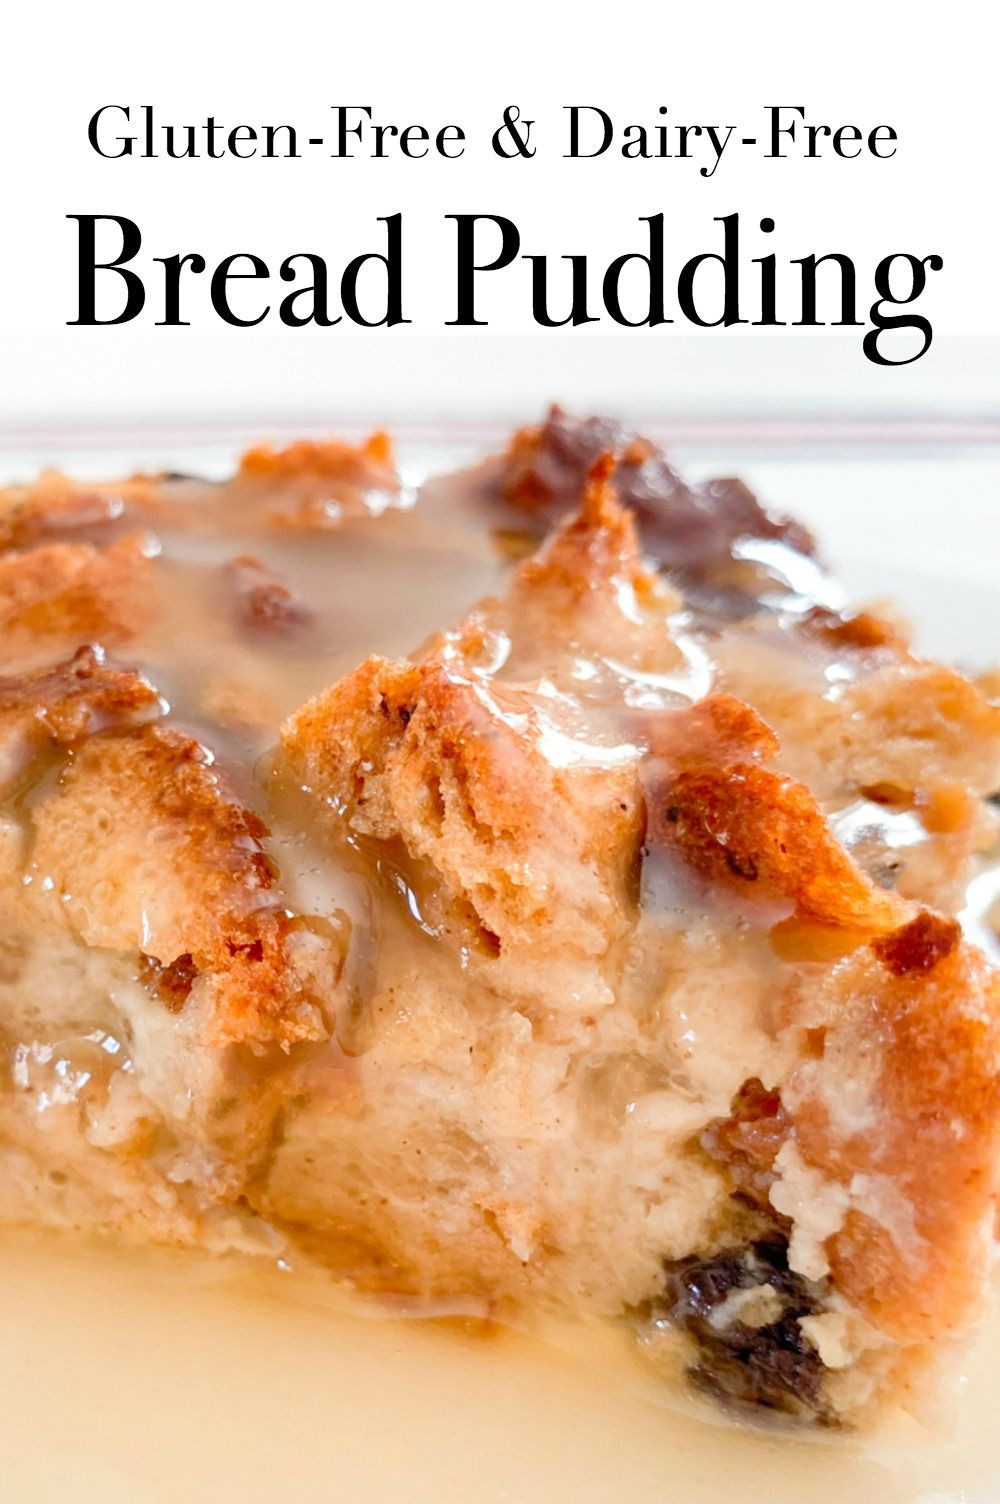 Gluten Free Bread Pudding Recipes
 Gluten Free Bread Pudding With Vanilla Sauce